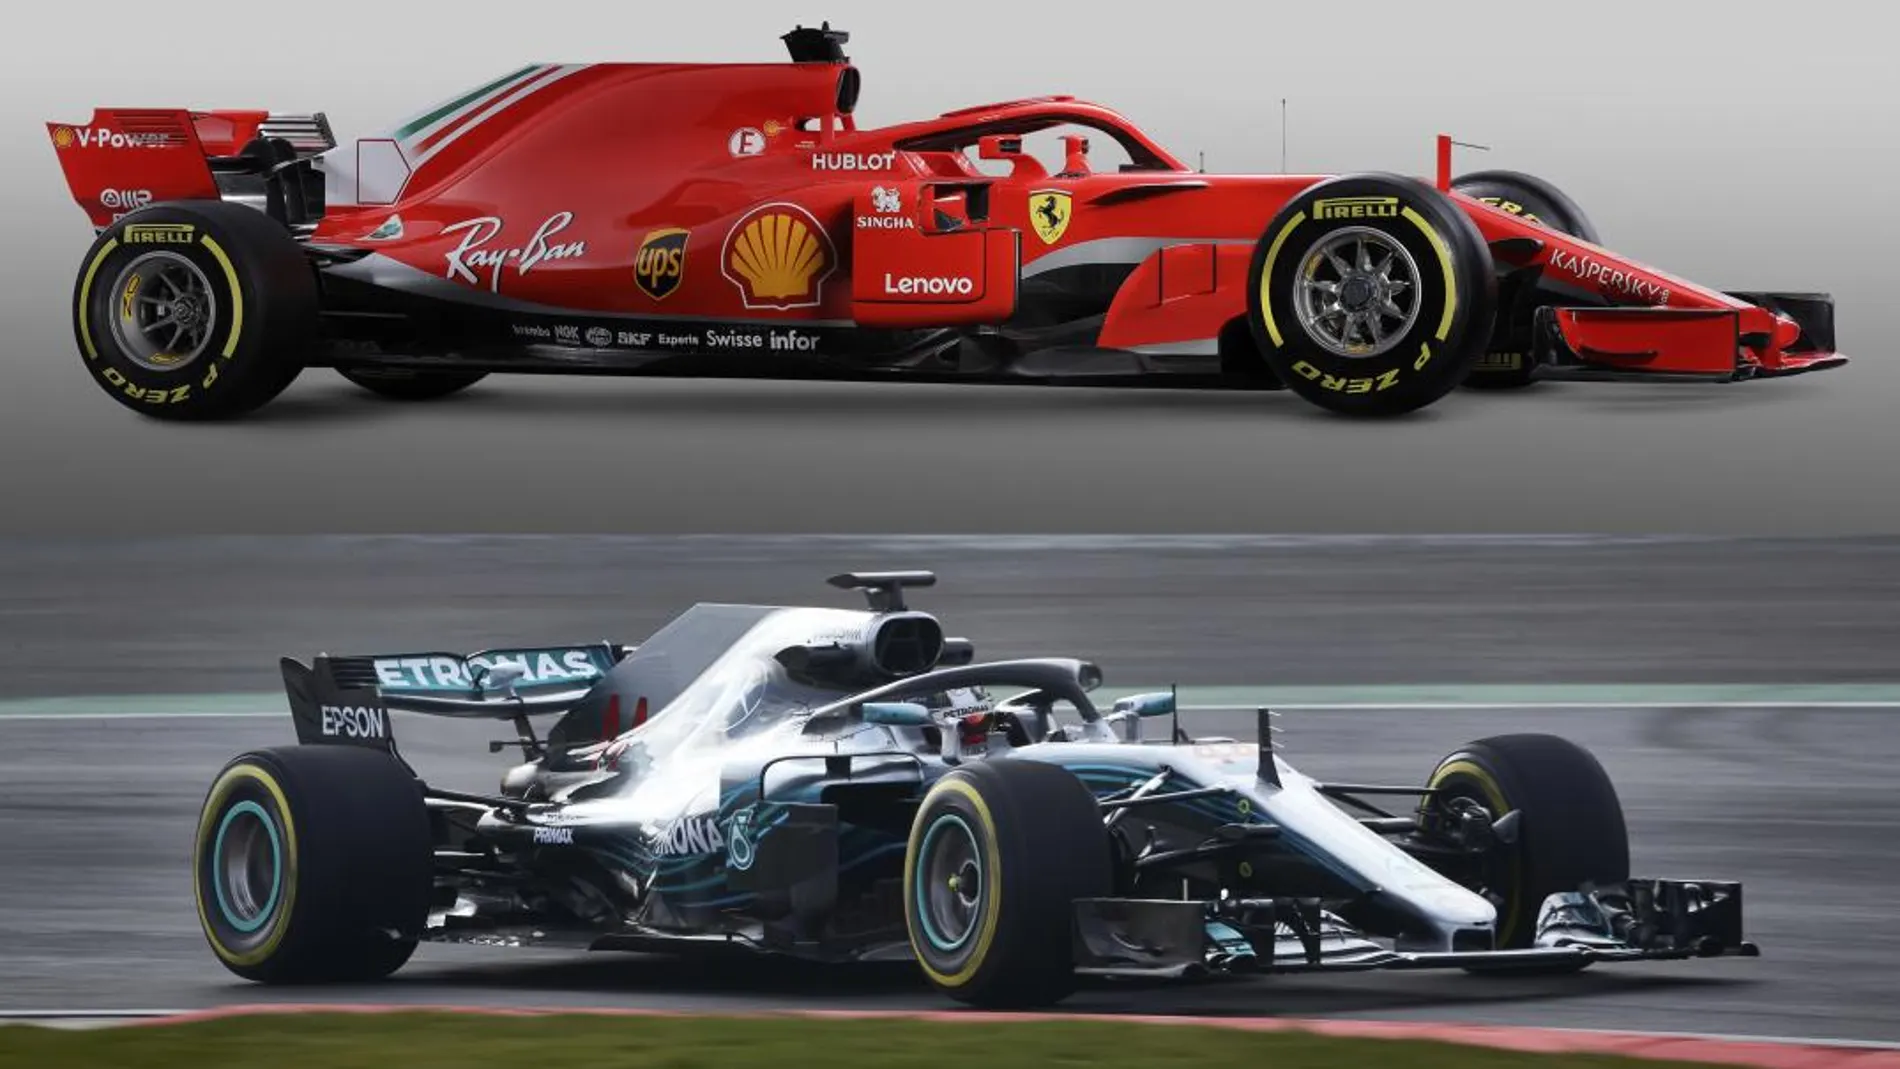 El 26 de febrero ambos coches estarán rodando en el circuito de Cataluña